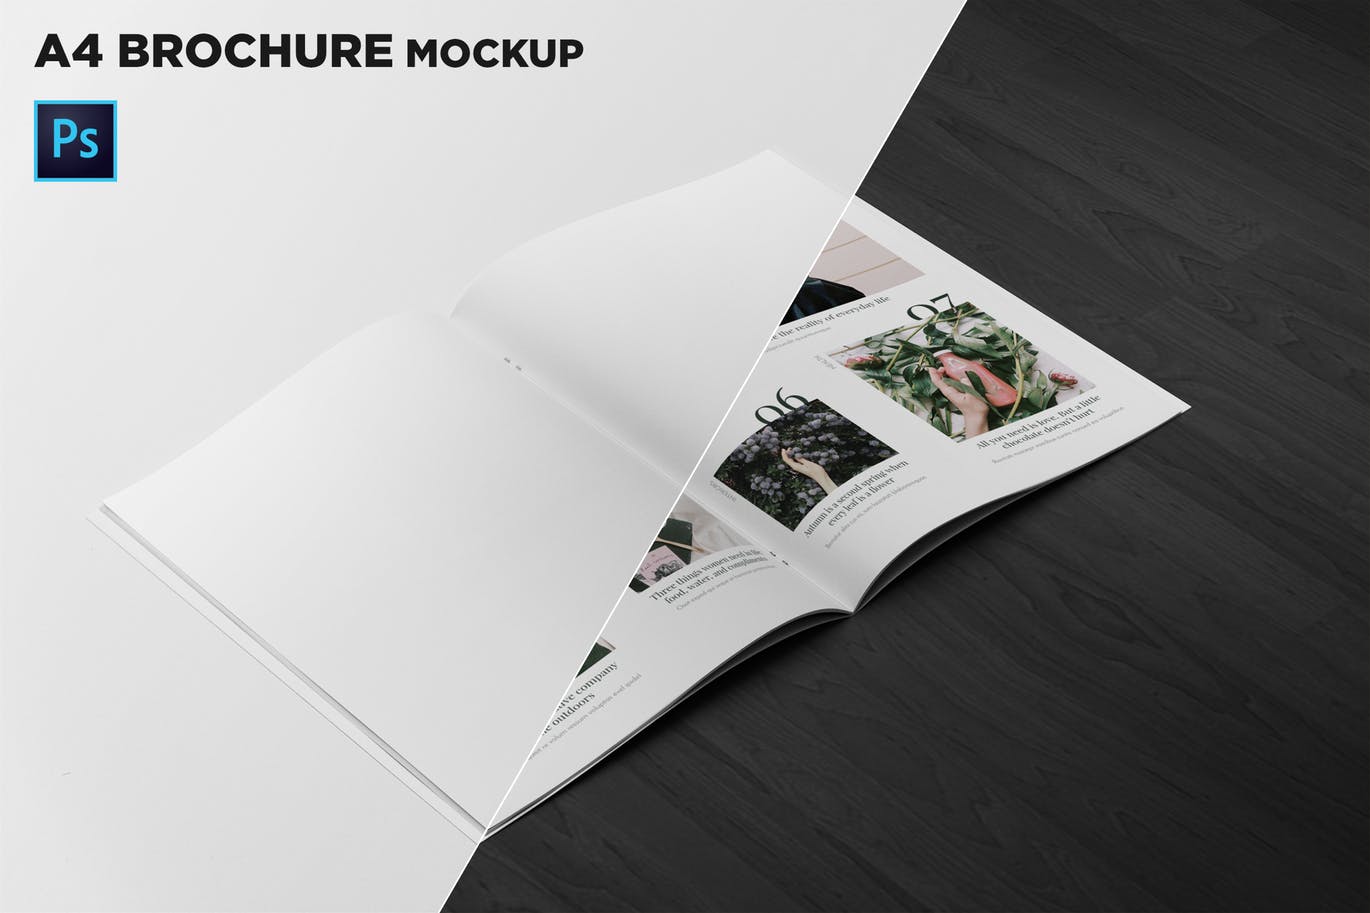 A4宣传小册子/企业画册内页版式设计45度角视图样机蚂蚁素材精选 A4 Brochure Mockup 2 Pages Spread插图